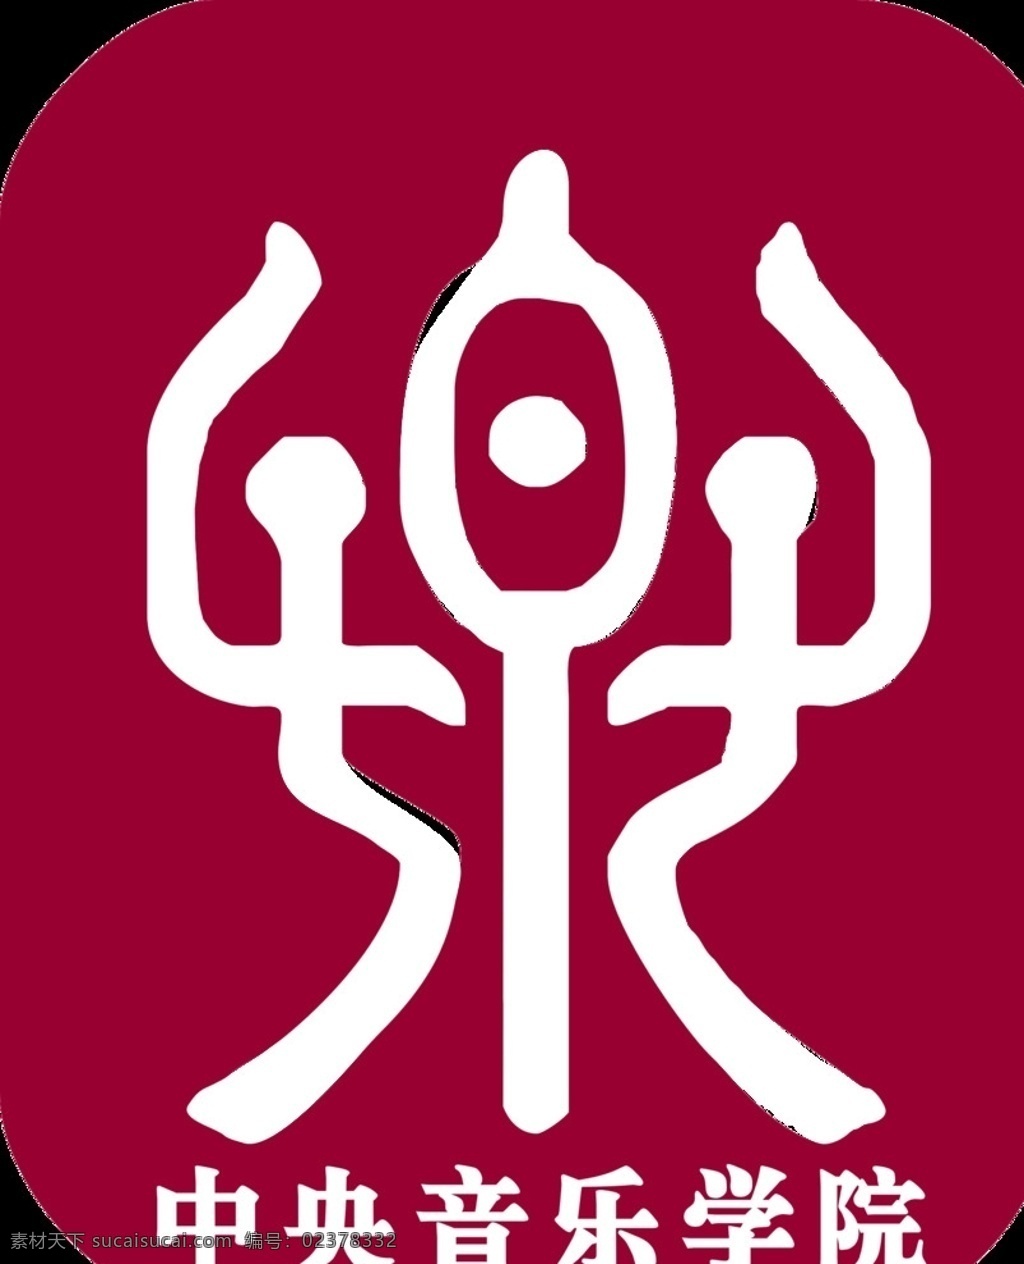 中央音乐学院 校徽 矢量图 logo设计 校徽矢量图 标志图标 公共标识标志